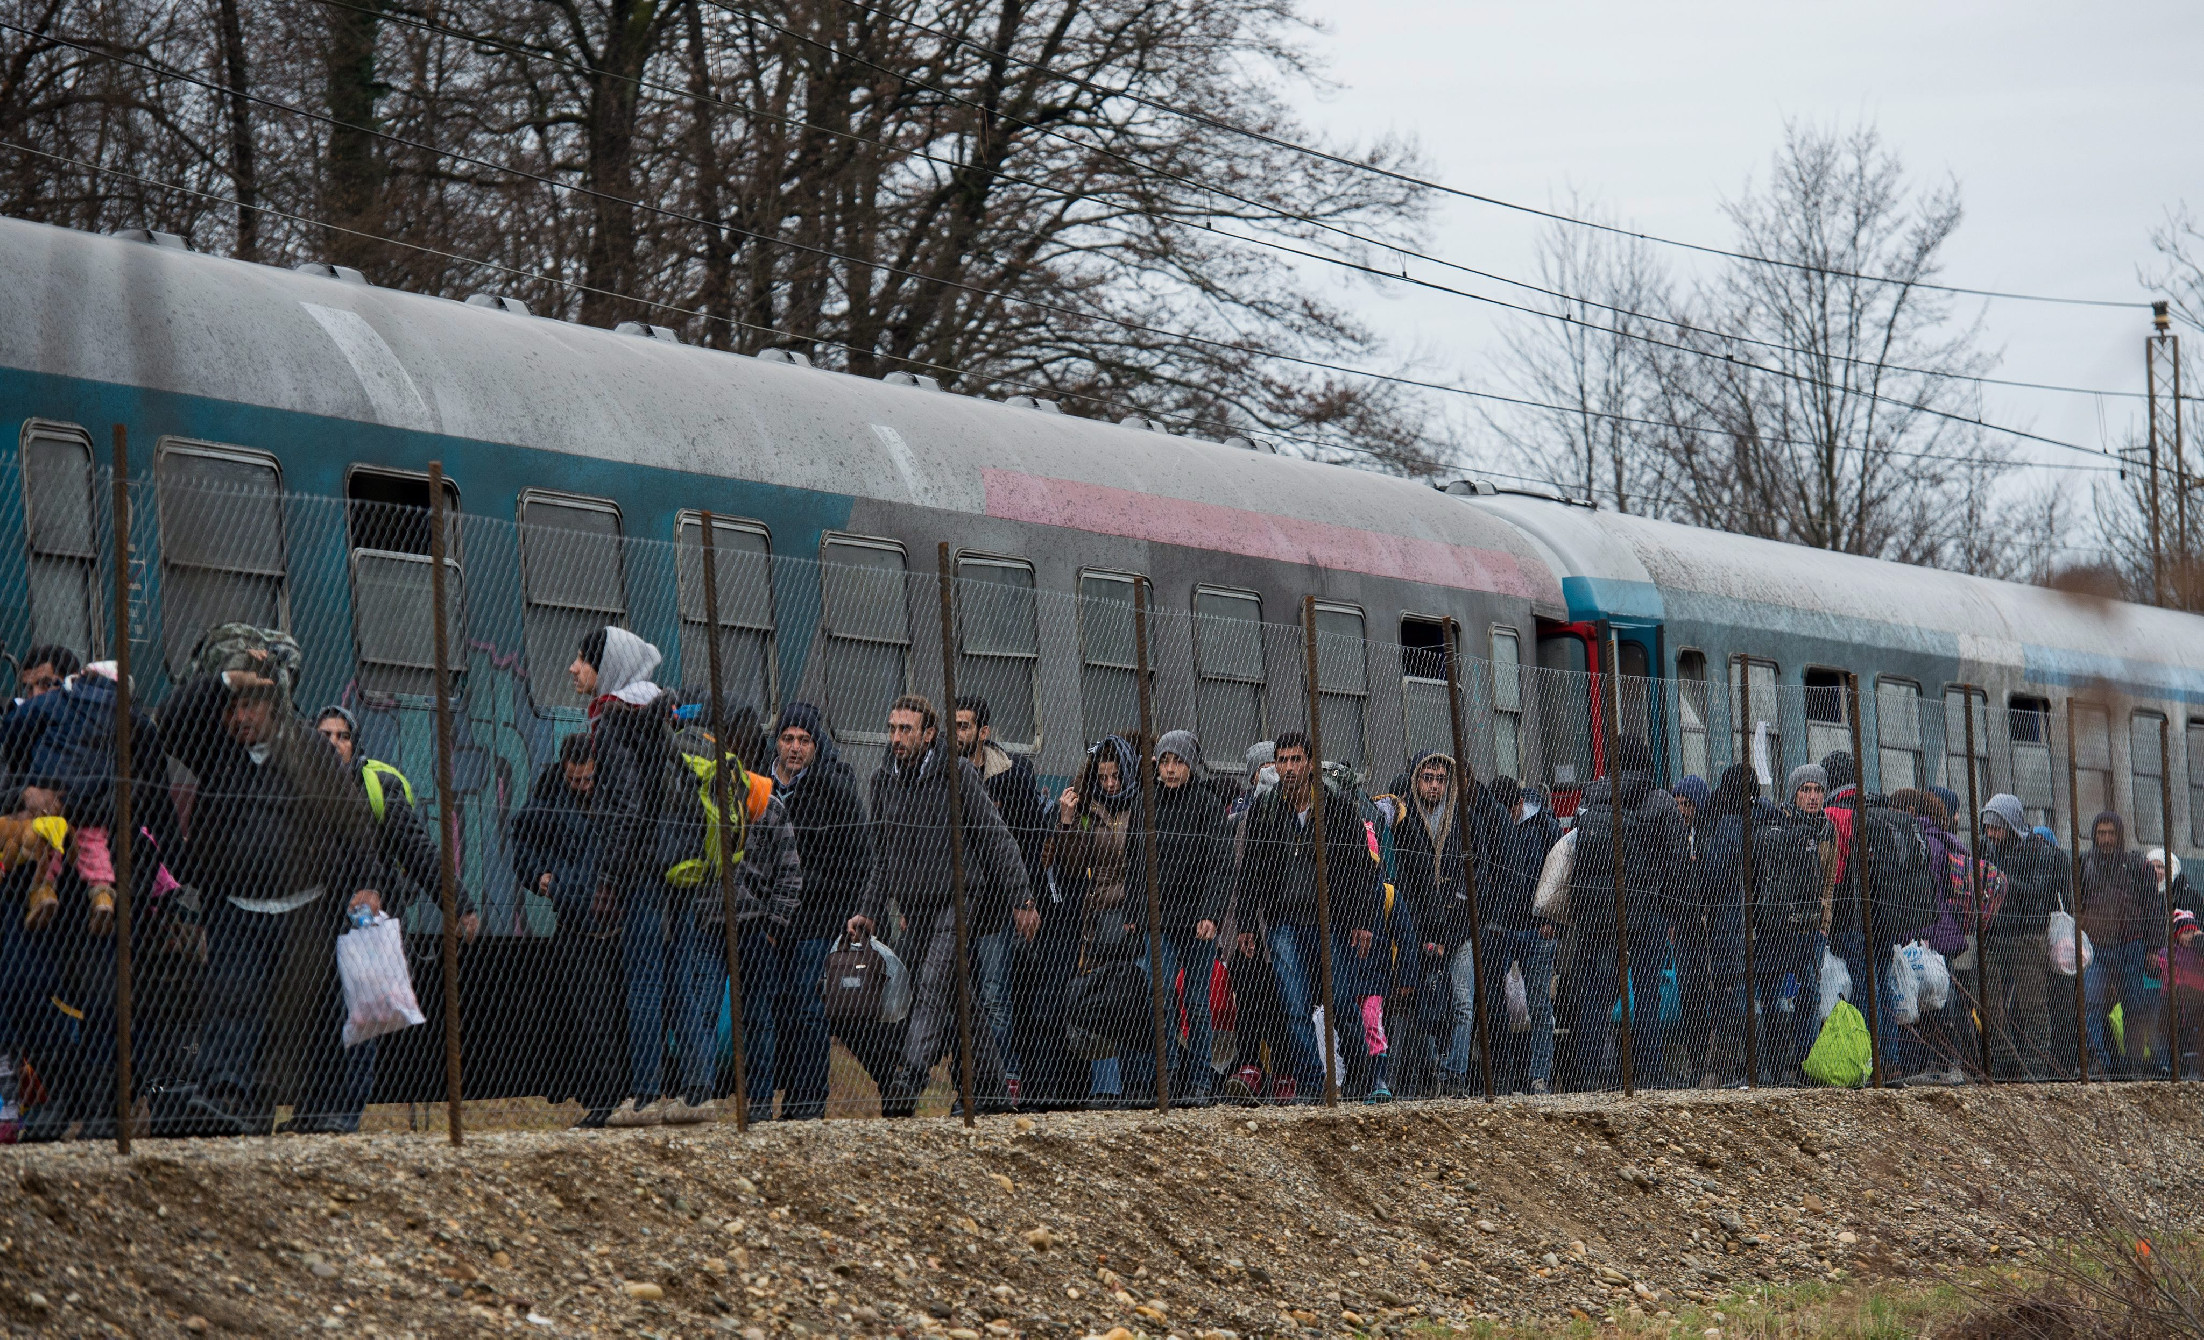 Ausztria is fellép az illegális bevándorlás ellen, de nem kerítéssel